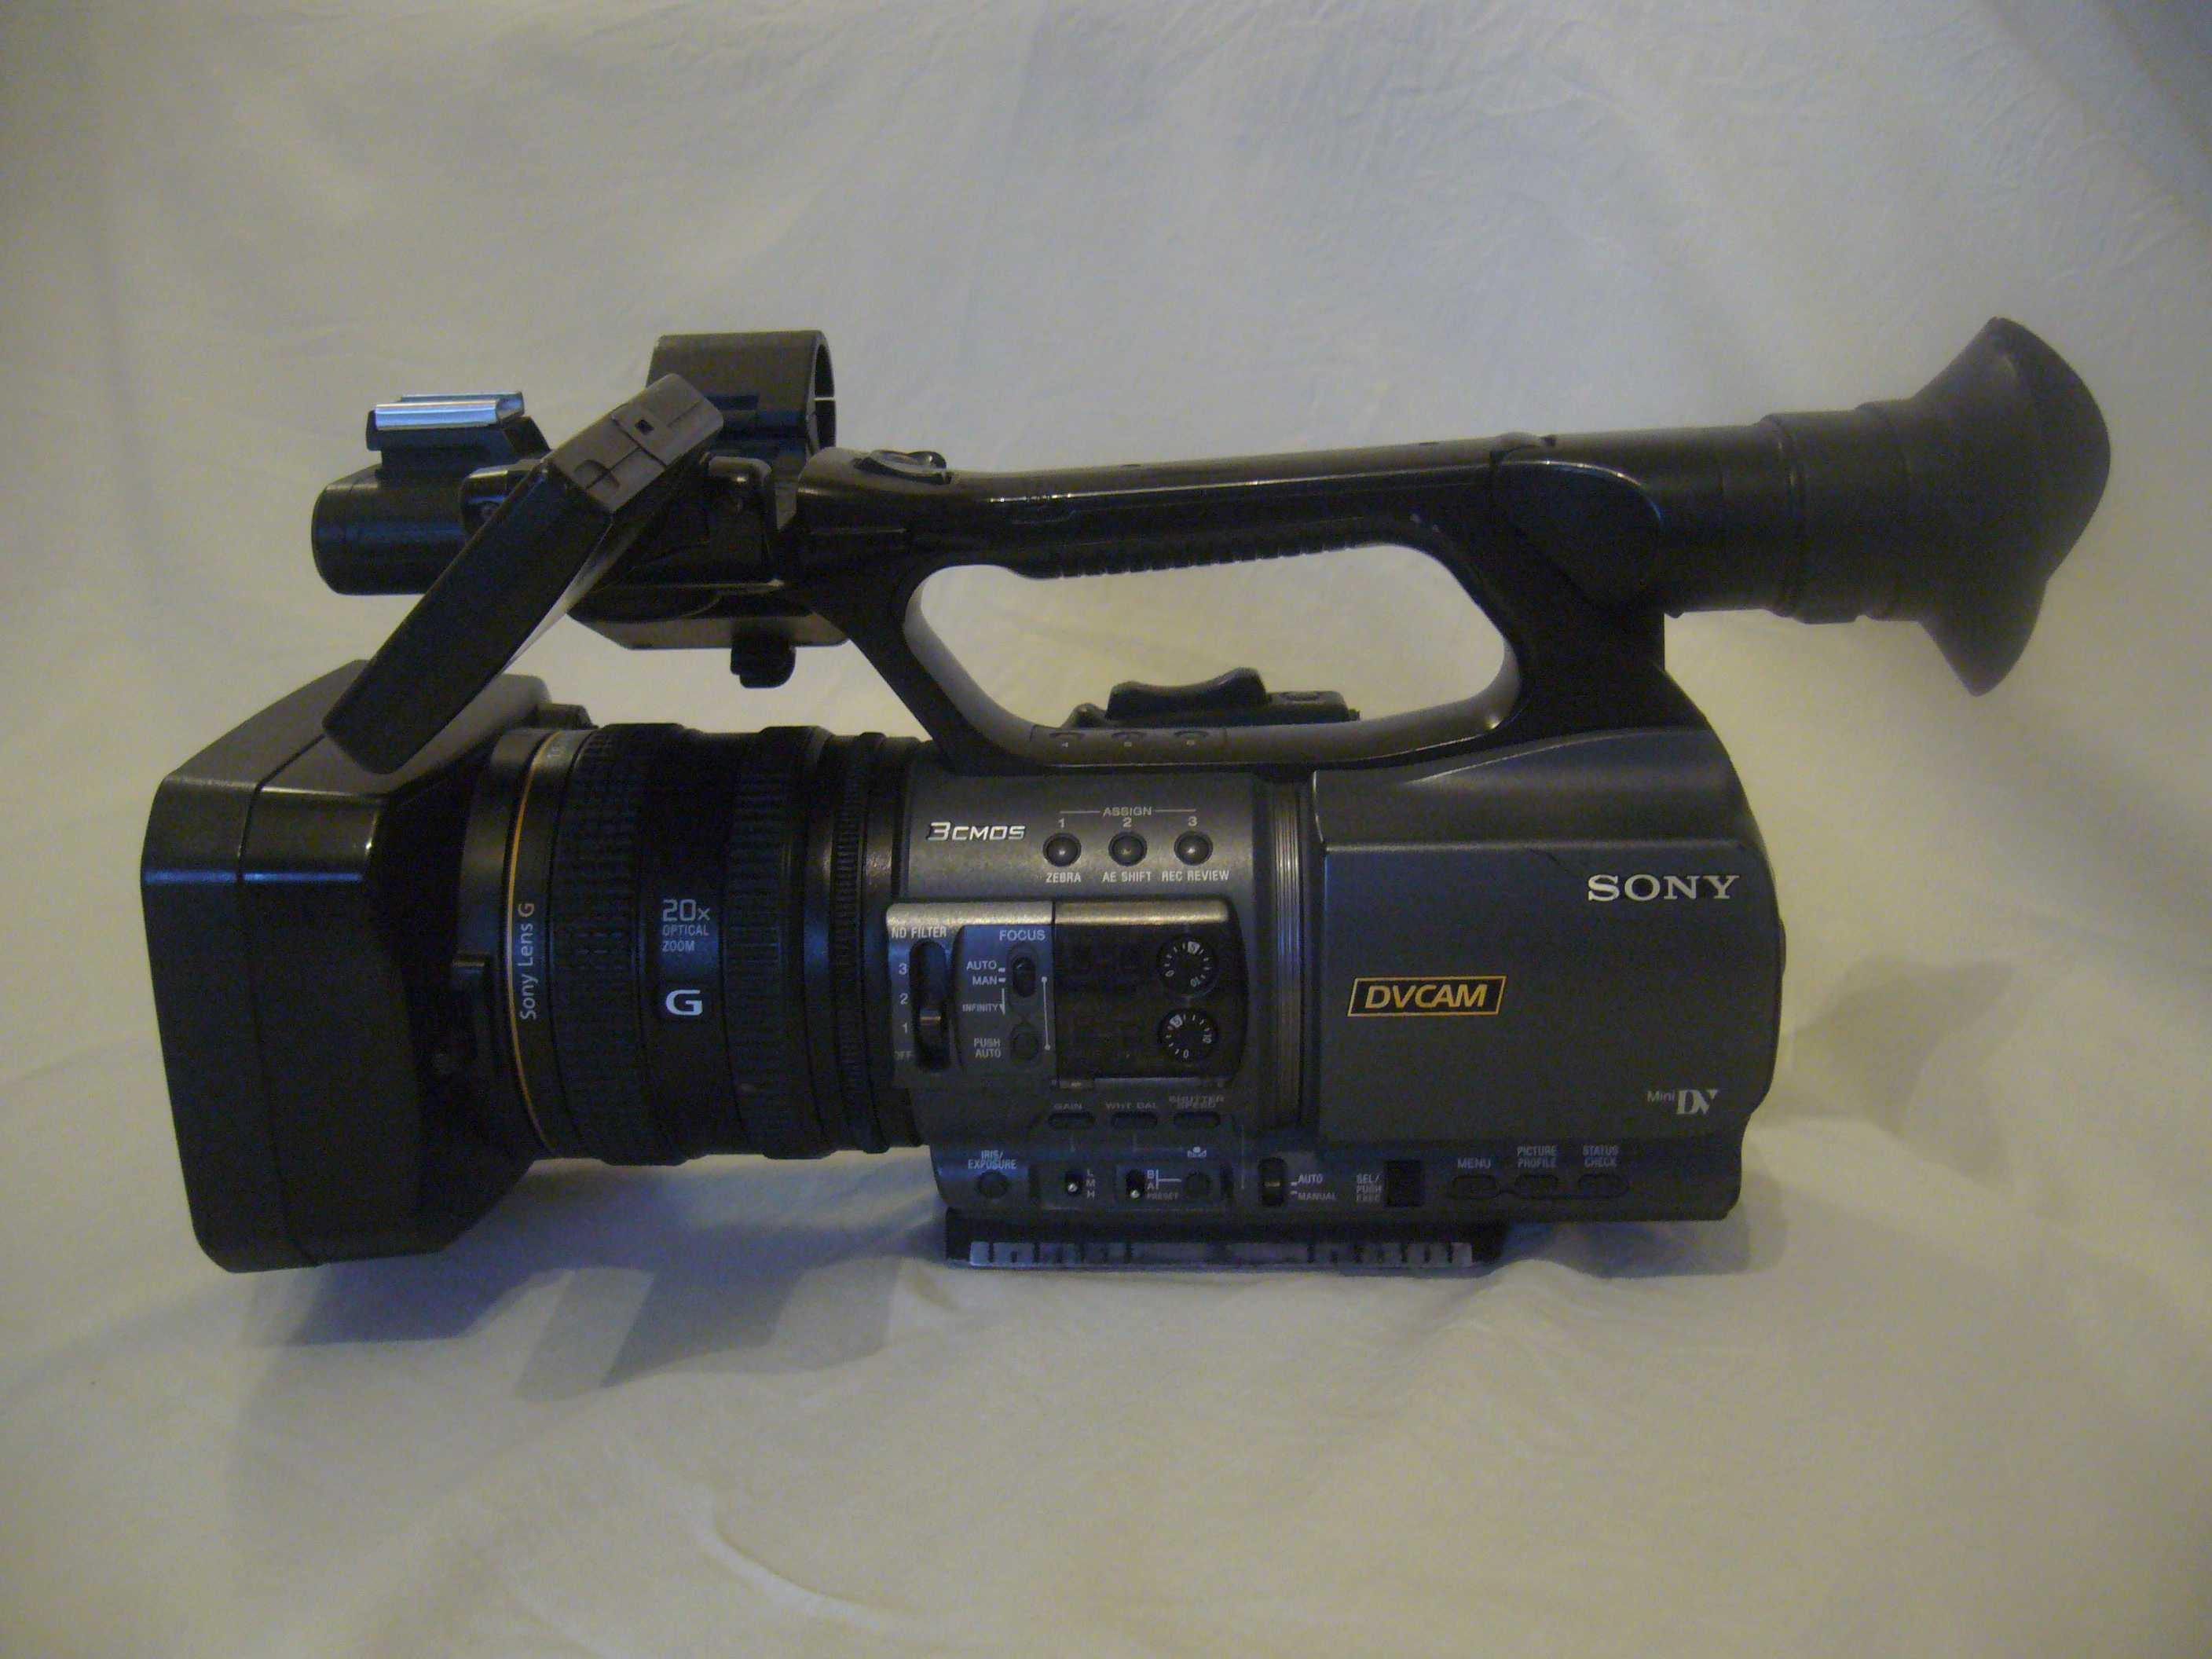 Sony dsr-pd175 - купить , скидки, цена, отзывы, обзор, характеристики - видеокамеры